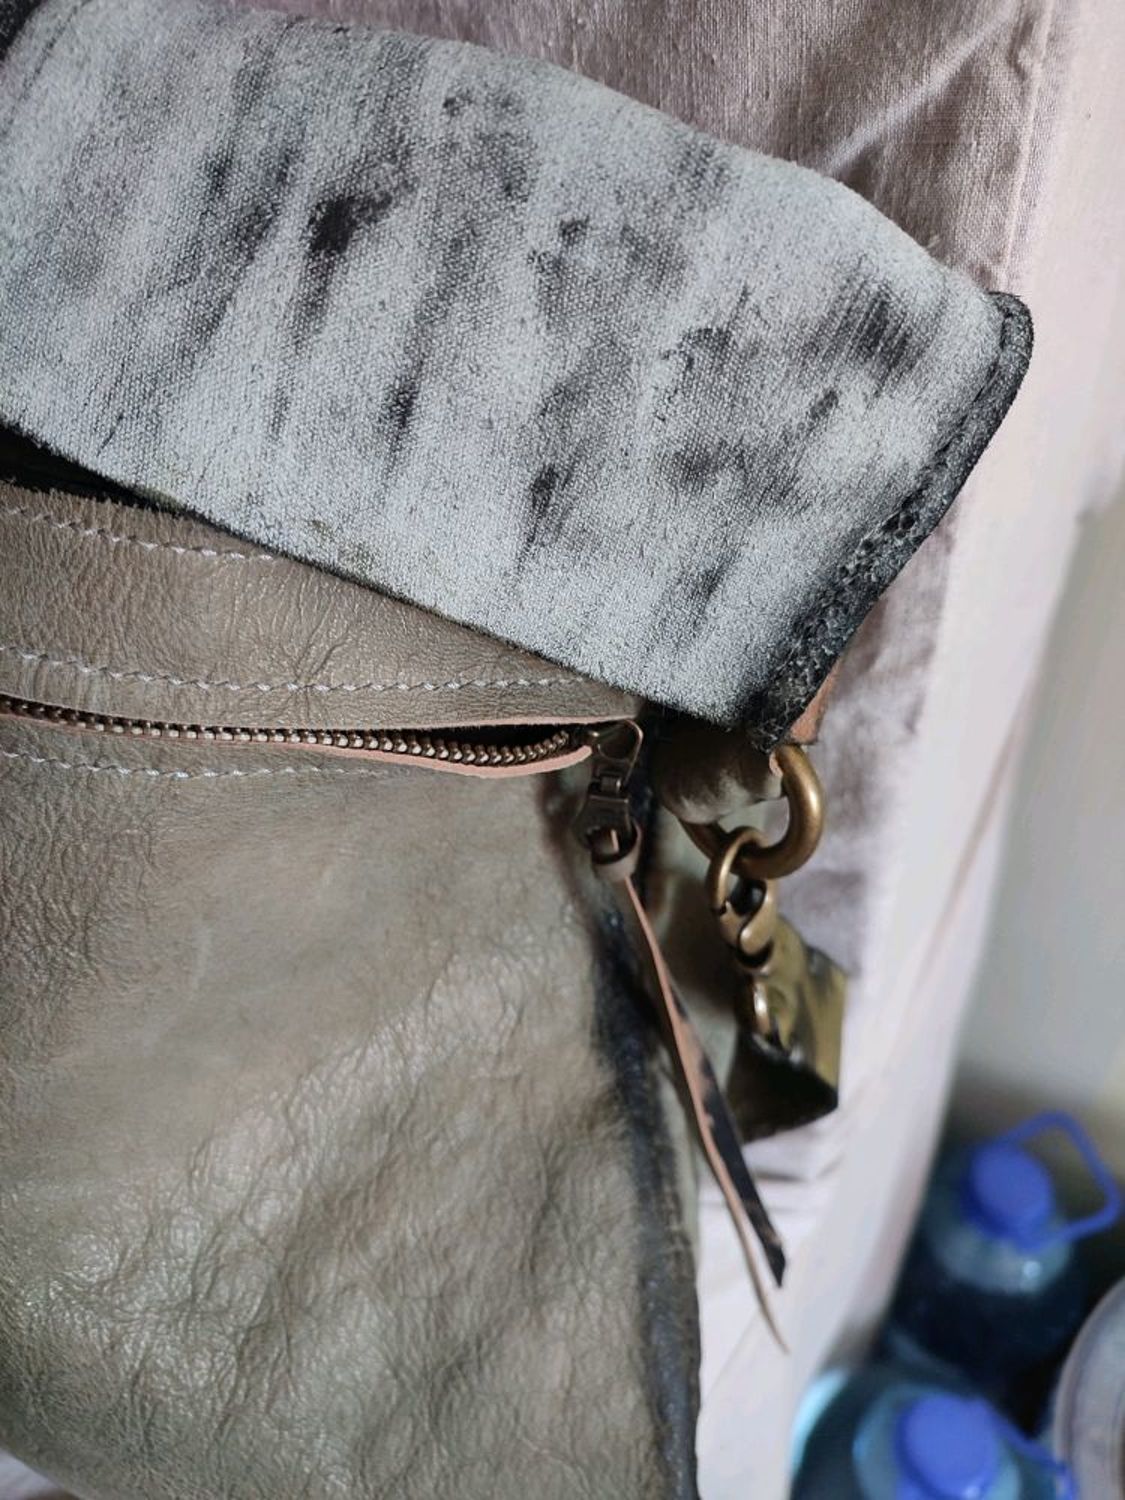 Photo №3 к отзыву покупателя Karina Kayumova о товаре Оливковая кожаная сумка ручной работы